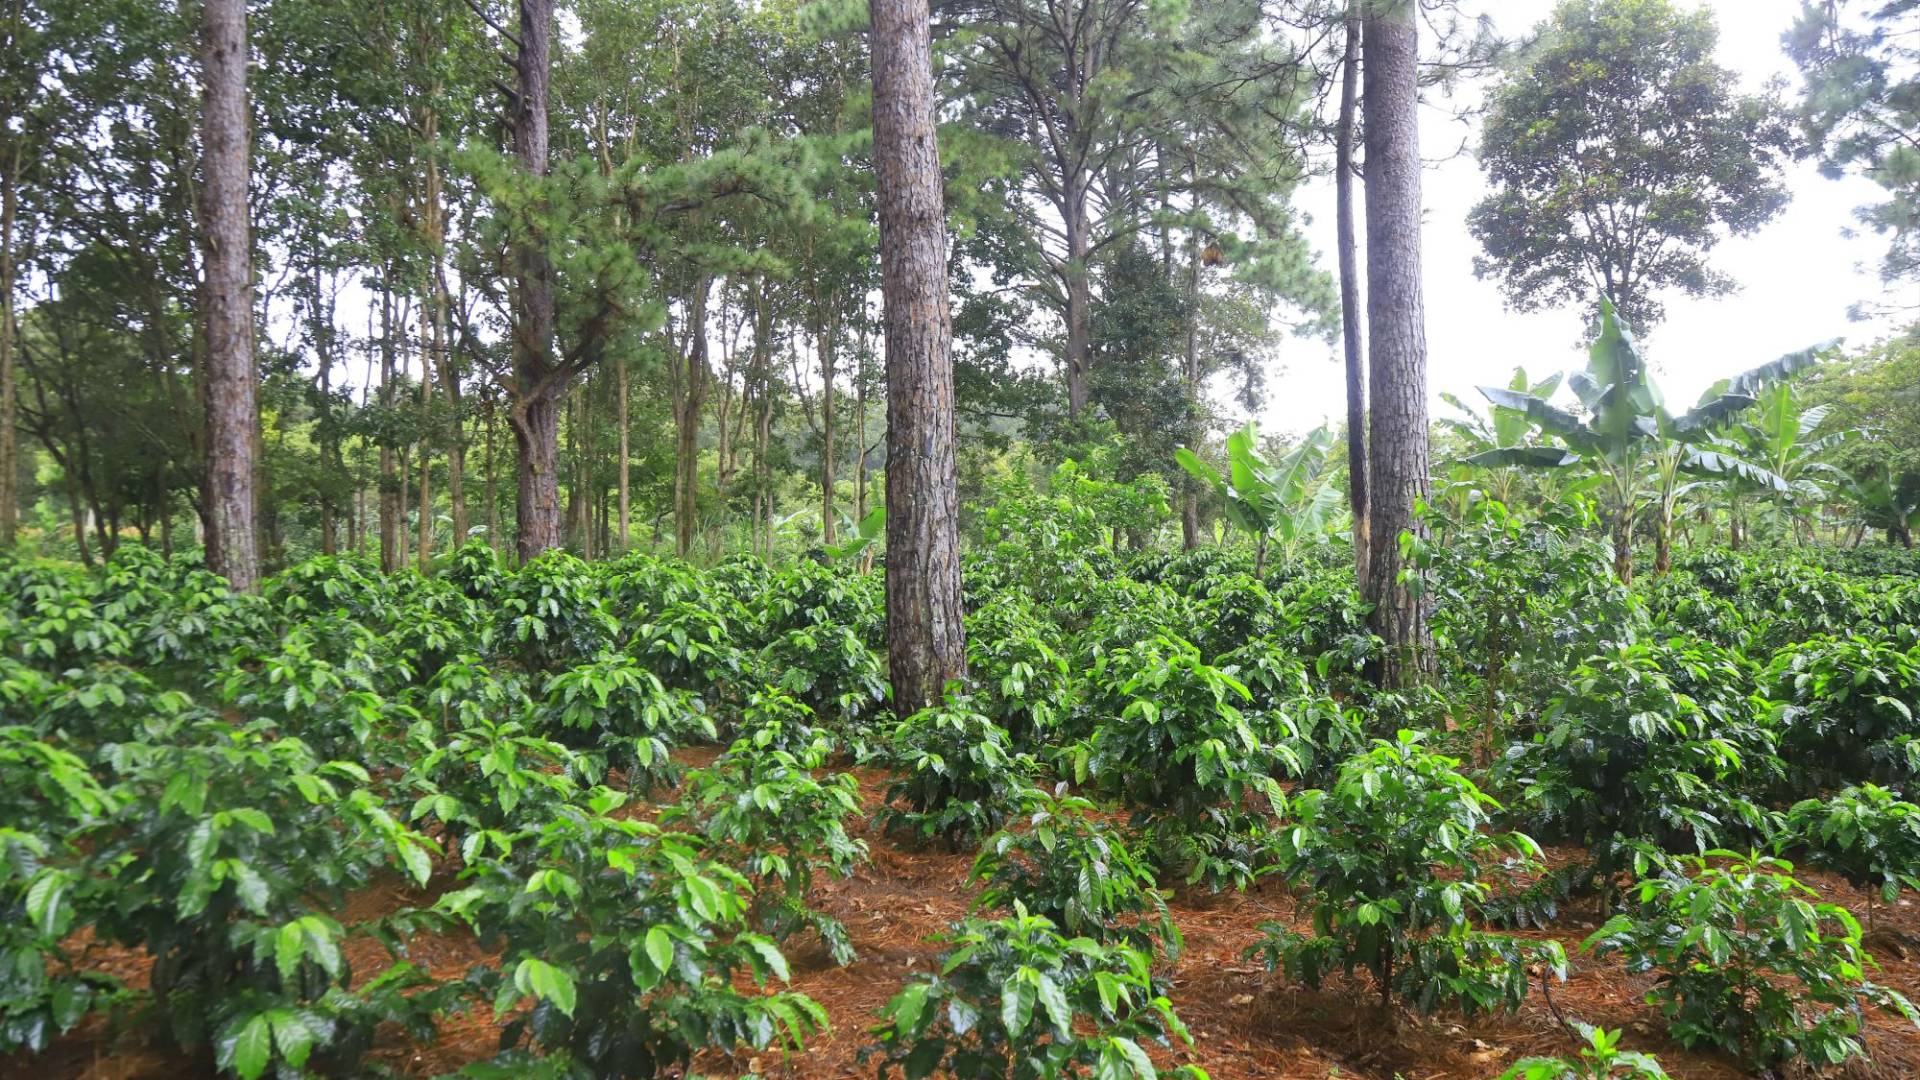 $!El café rodeado de árboles materiales y frutales absorbe sus aromas, aportando mejores sabores y calidad al aromático.